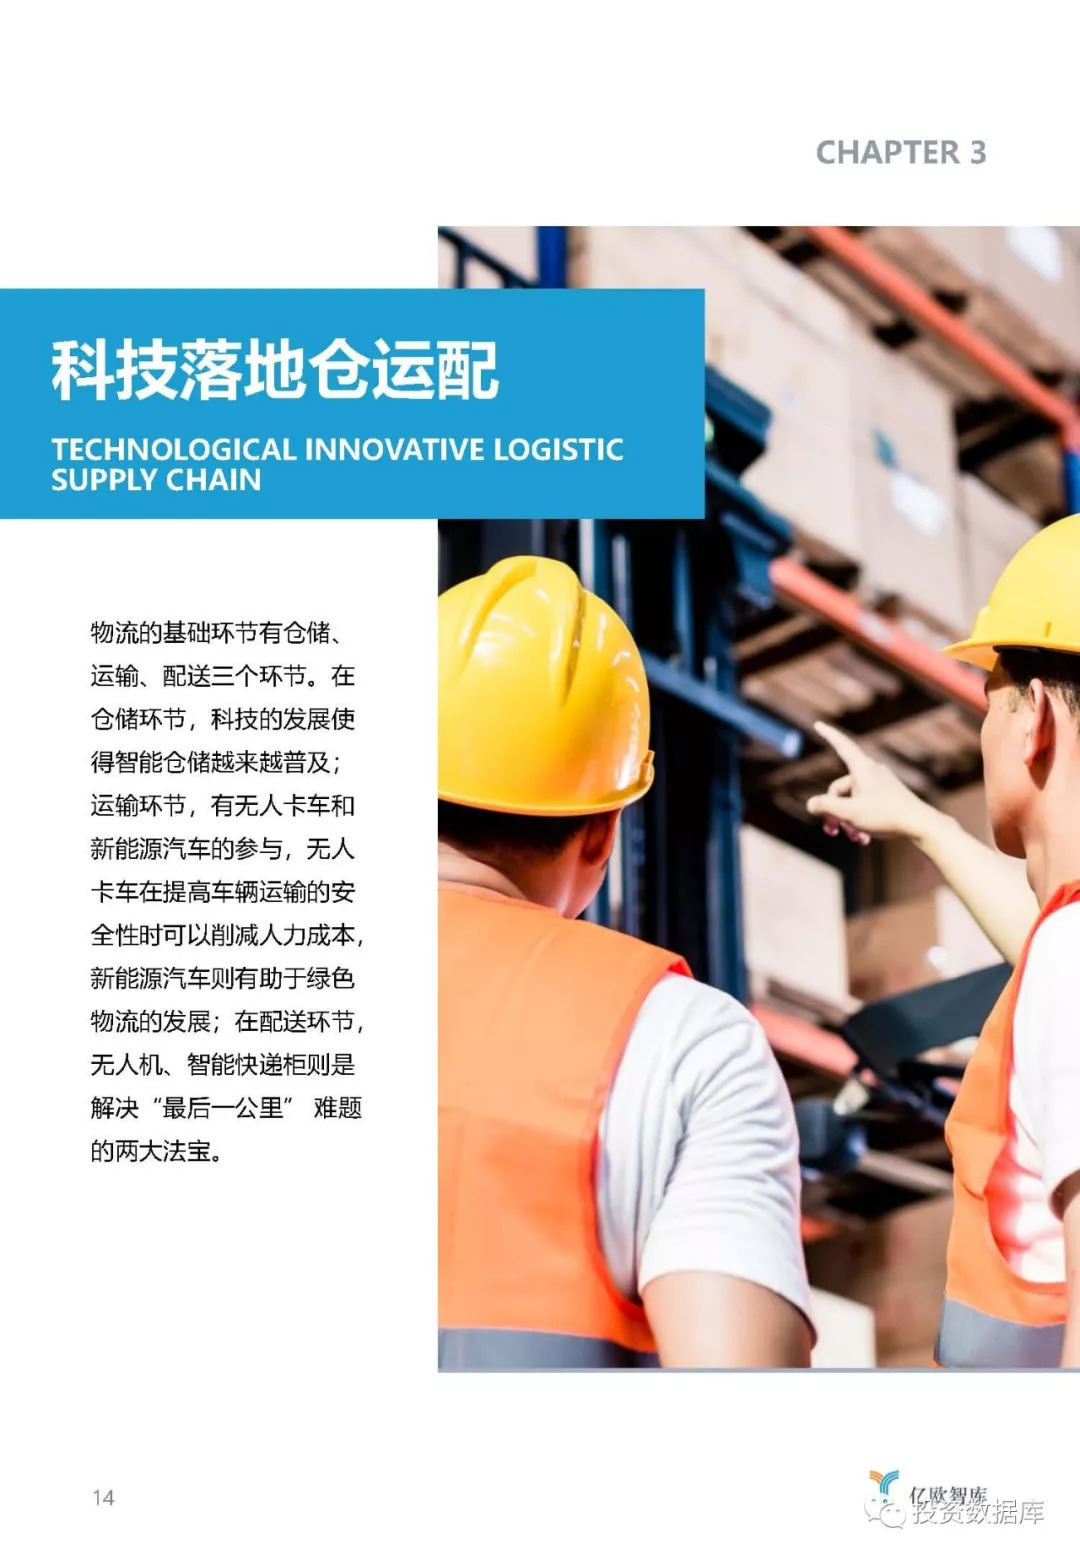 2018年中国物流科技发展研究报告